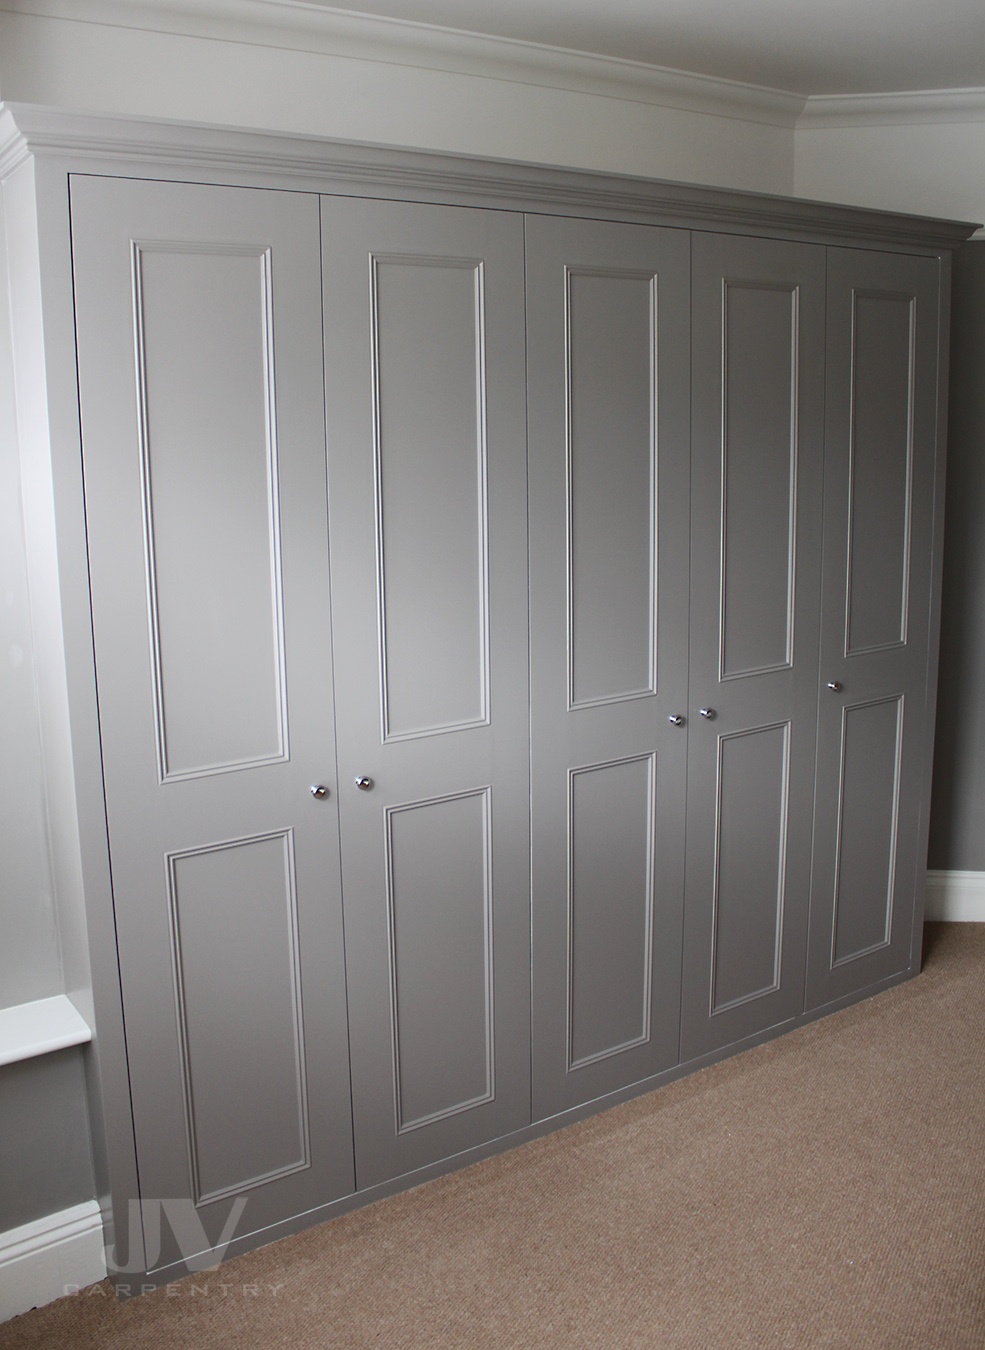 built-in bedroom wardrobe ideas in grey colour